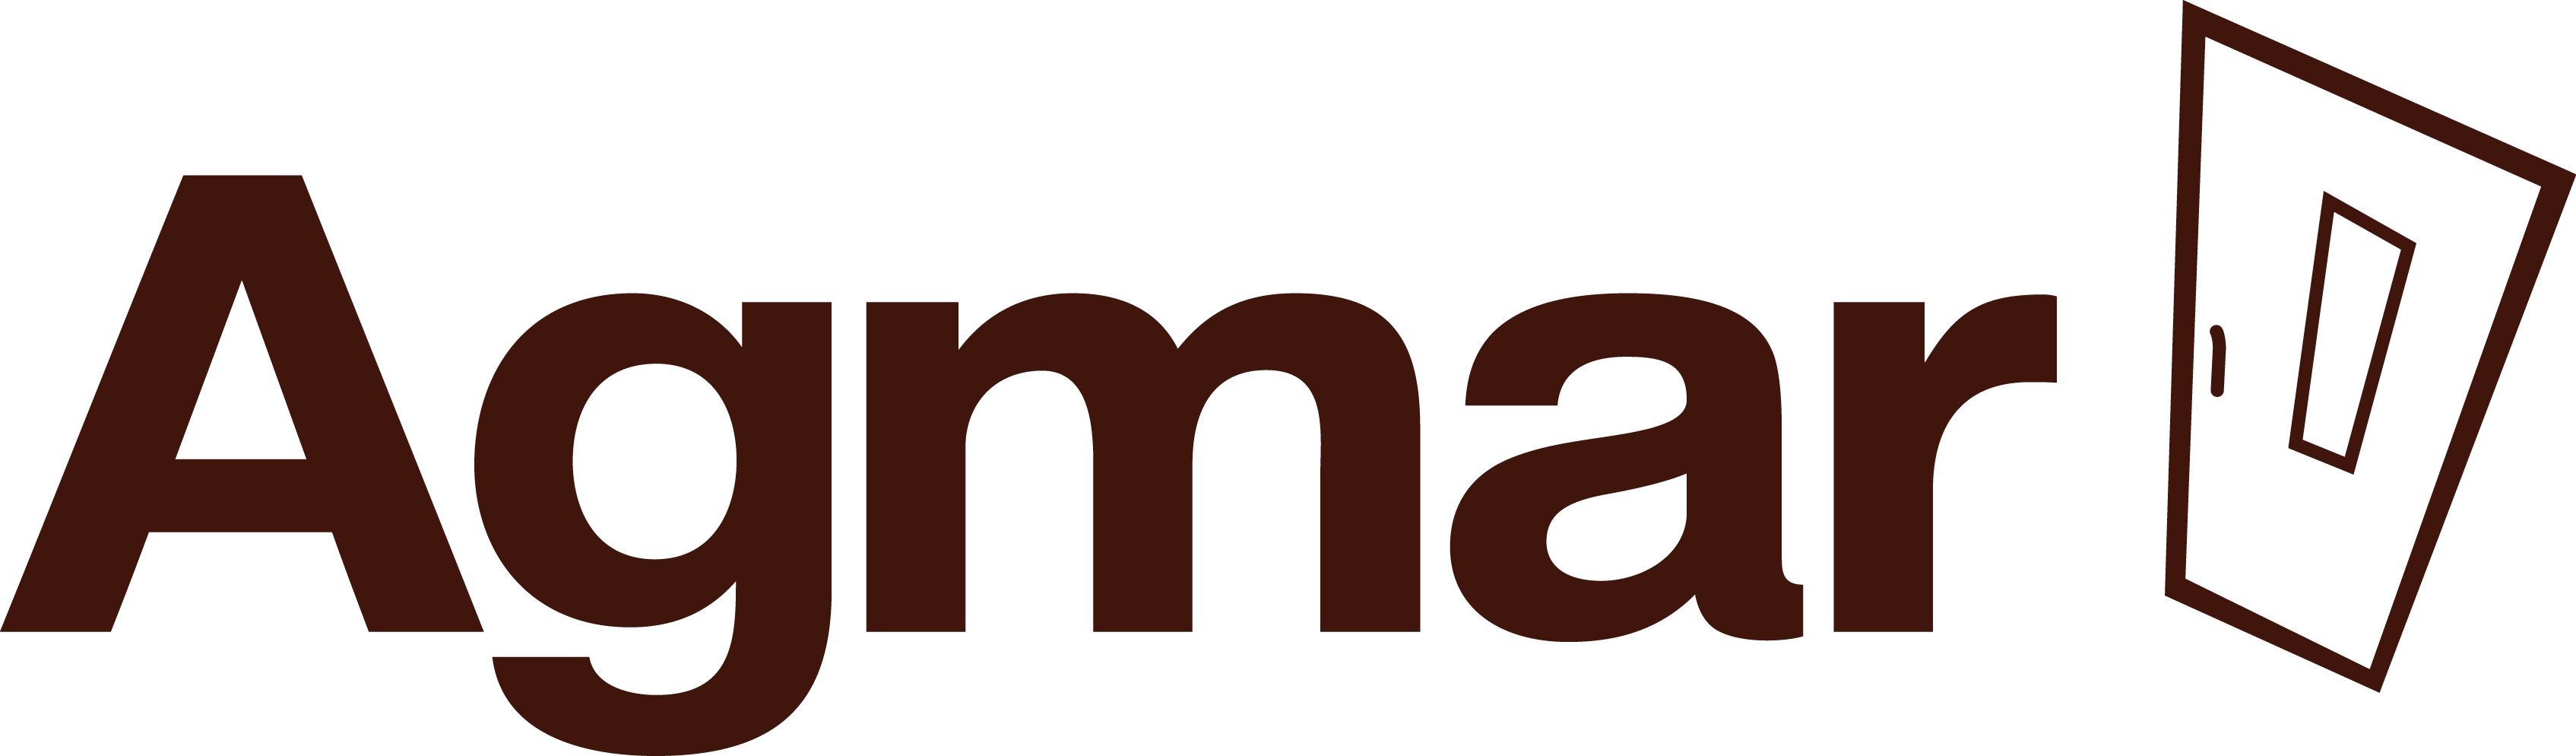 Agmar logo